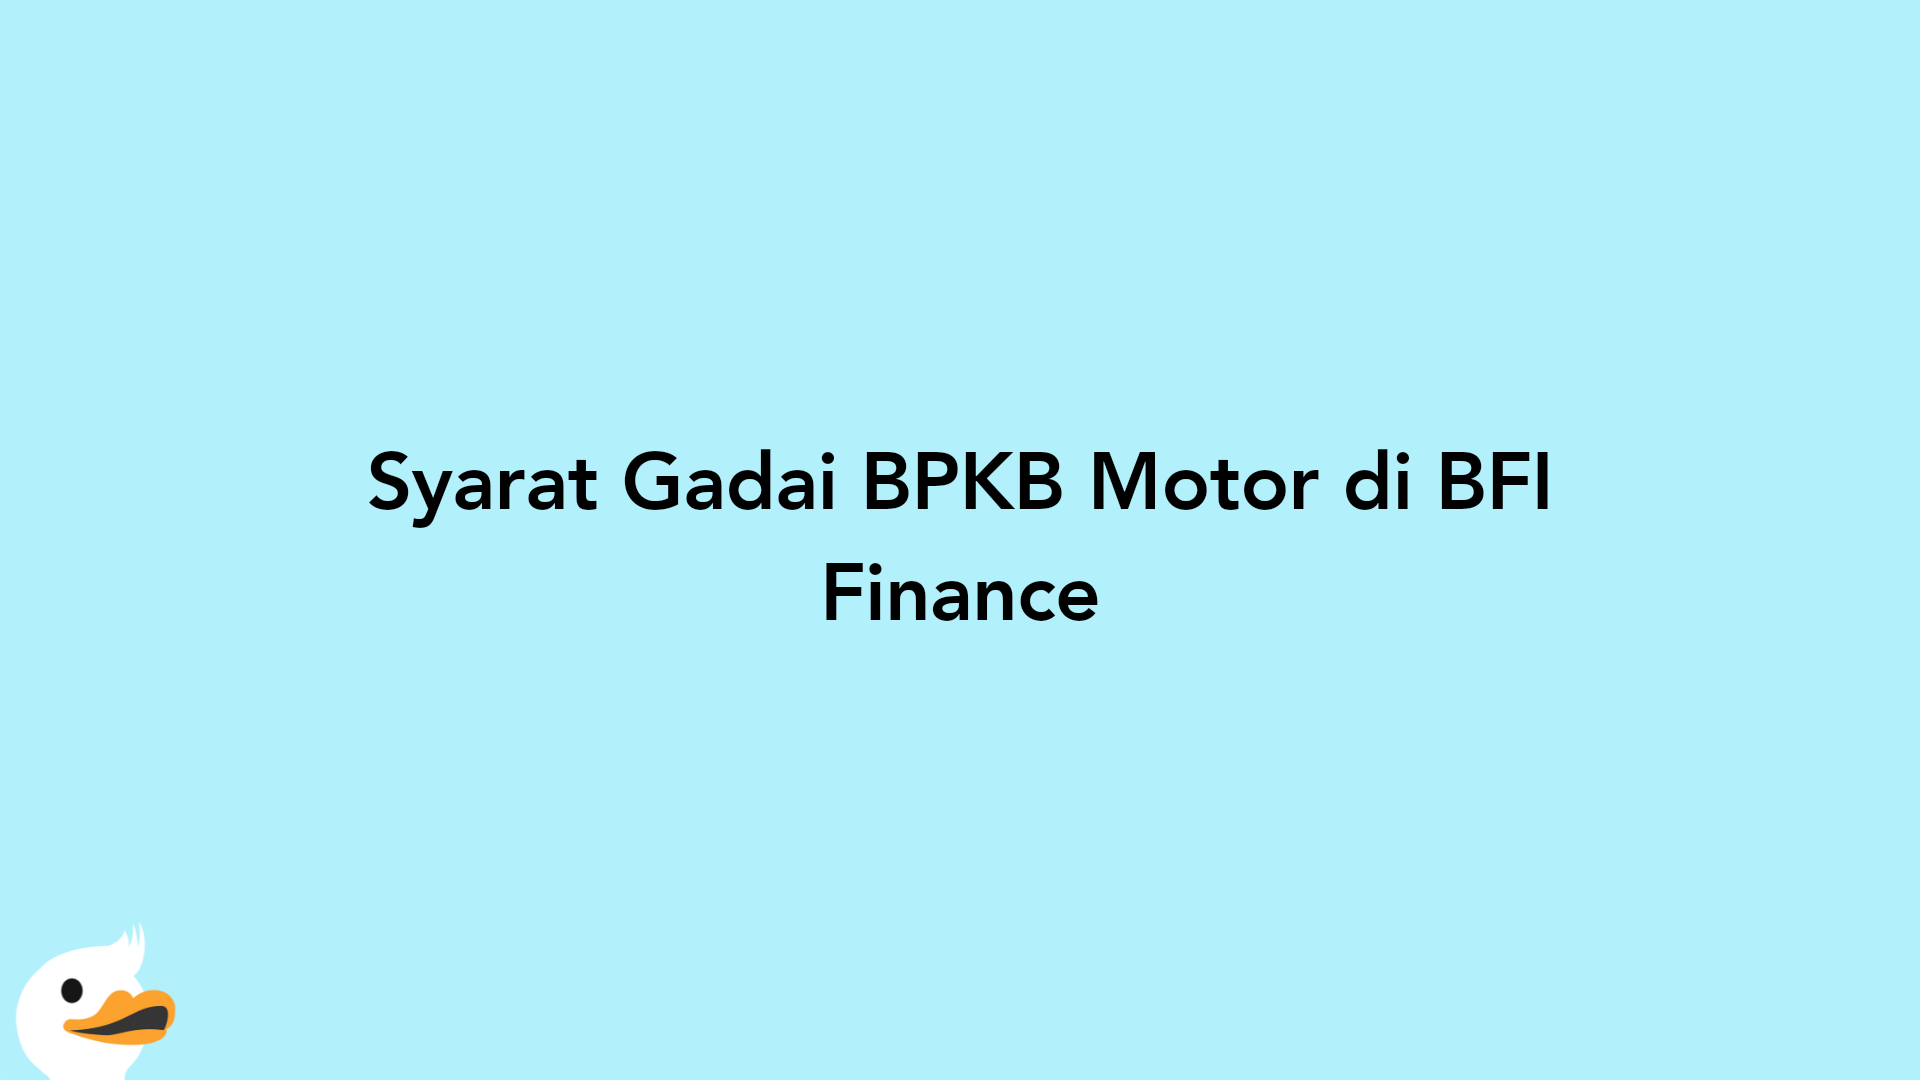 Syarat Gadai BPKB Motor di BFI Finance